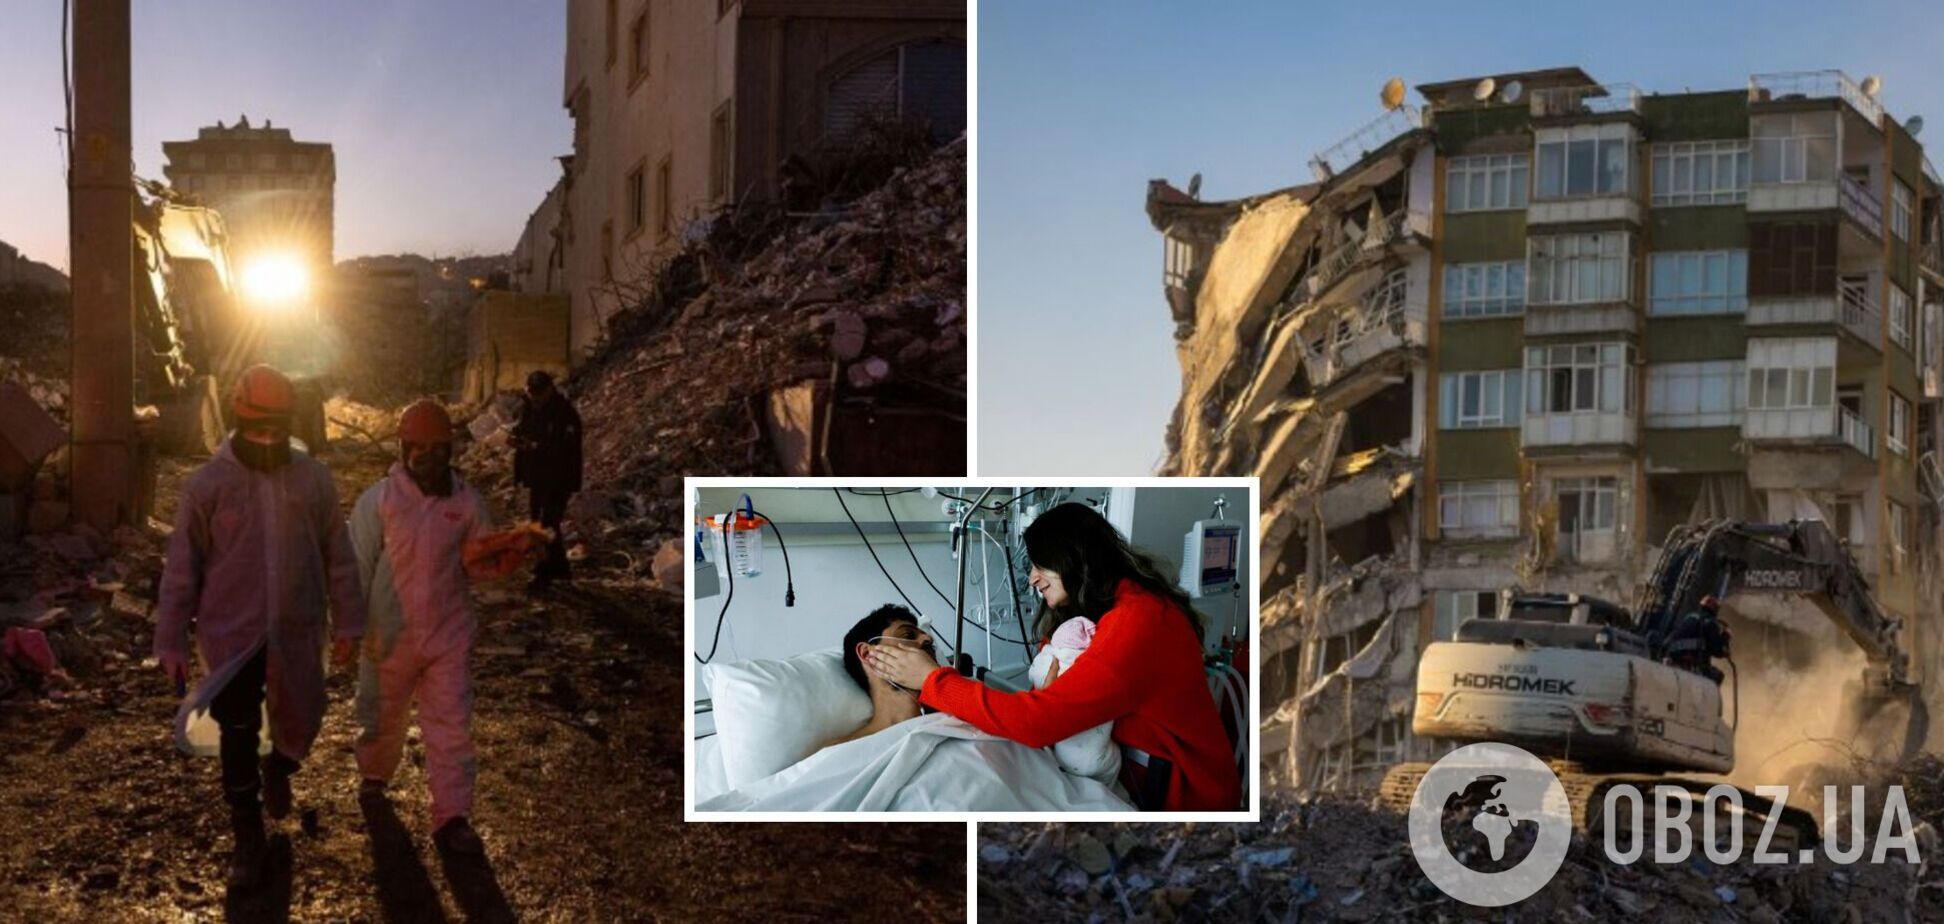  На 11-й день после землетрясния в Турции под завалами еще находили живых